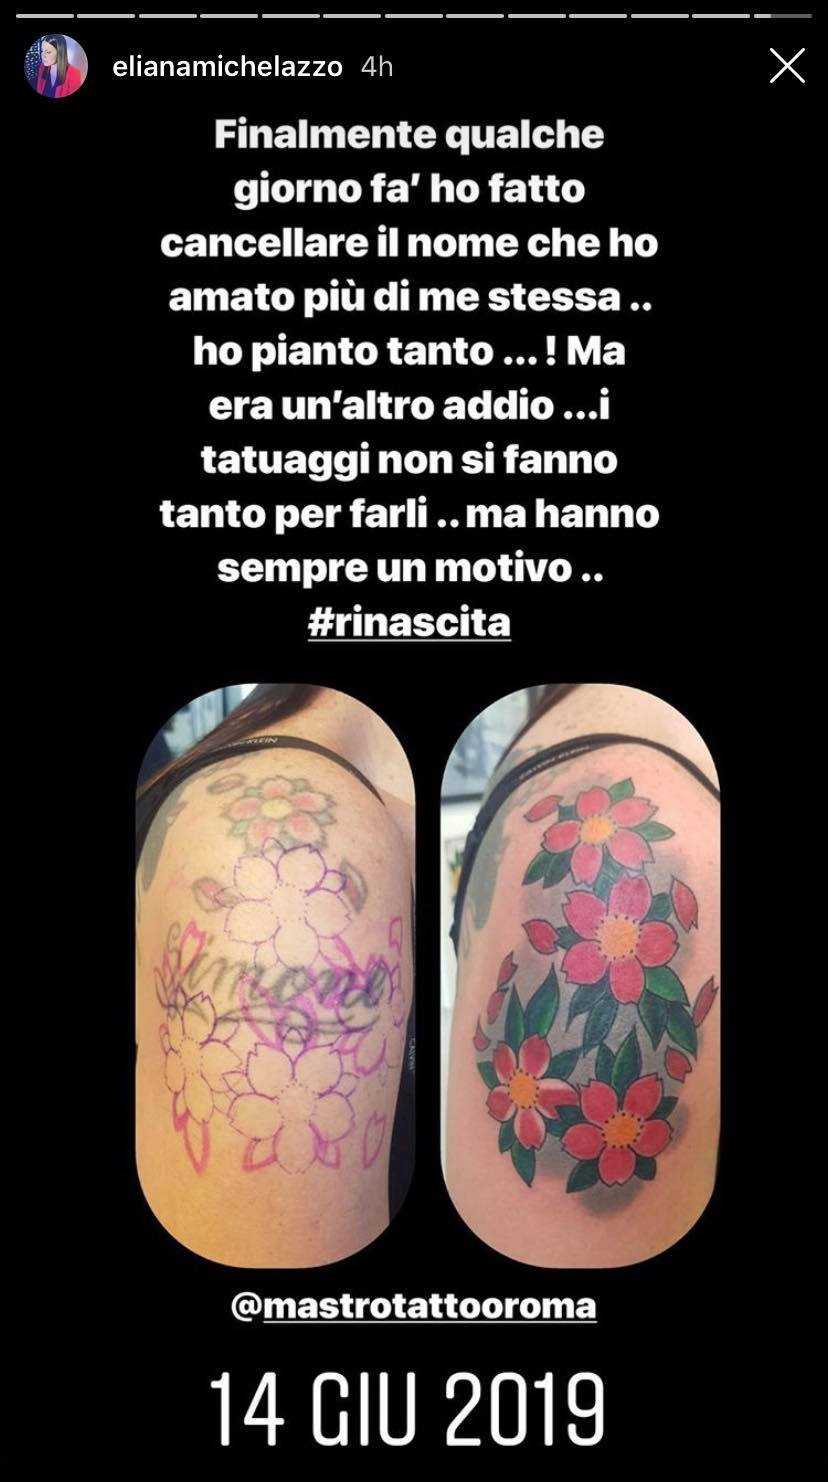 Eliana Michelazzo tatuaggio